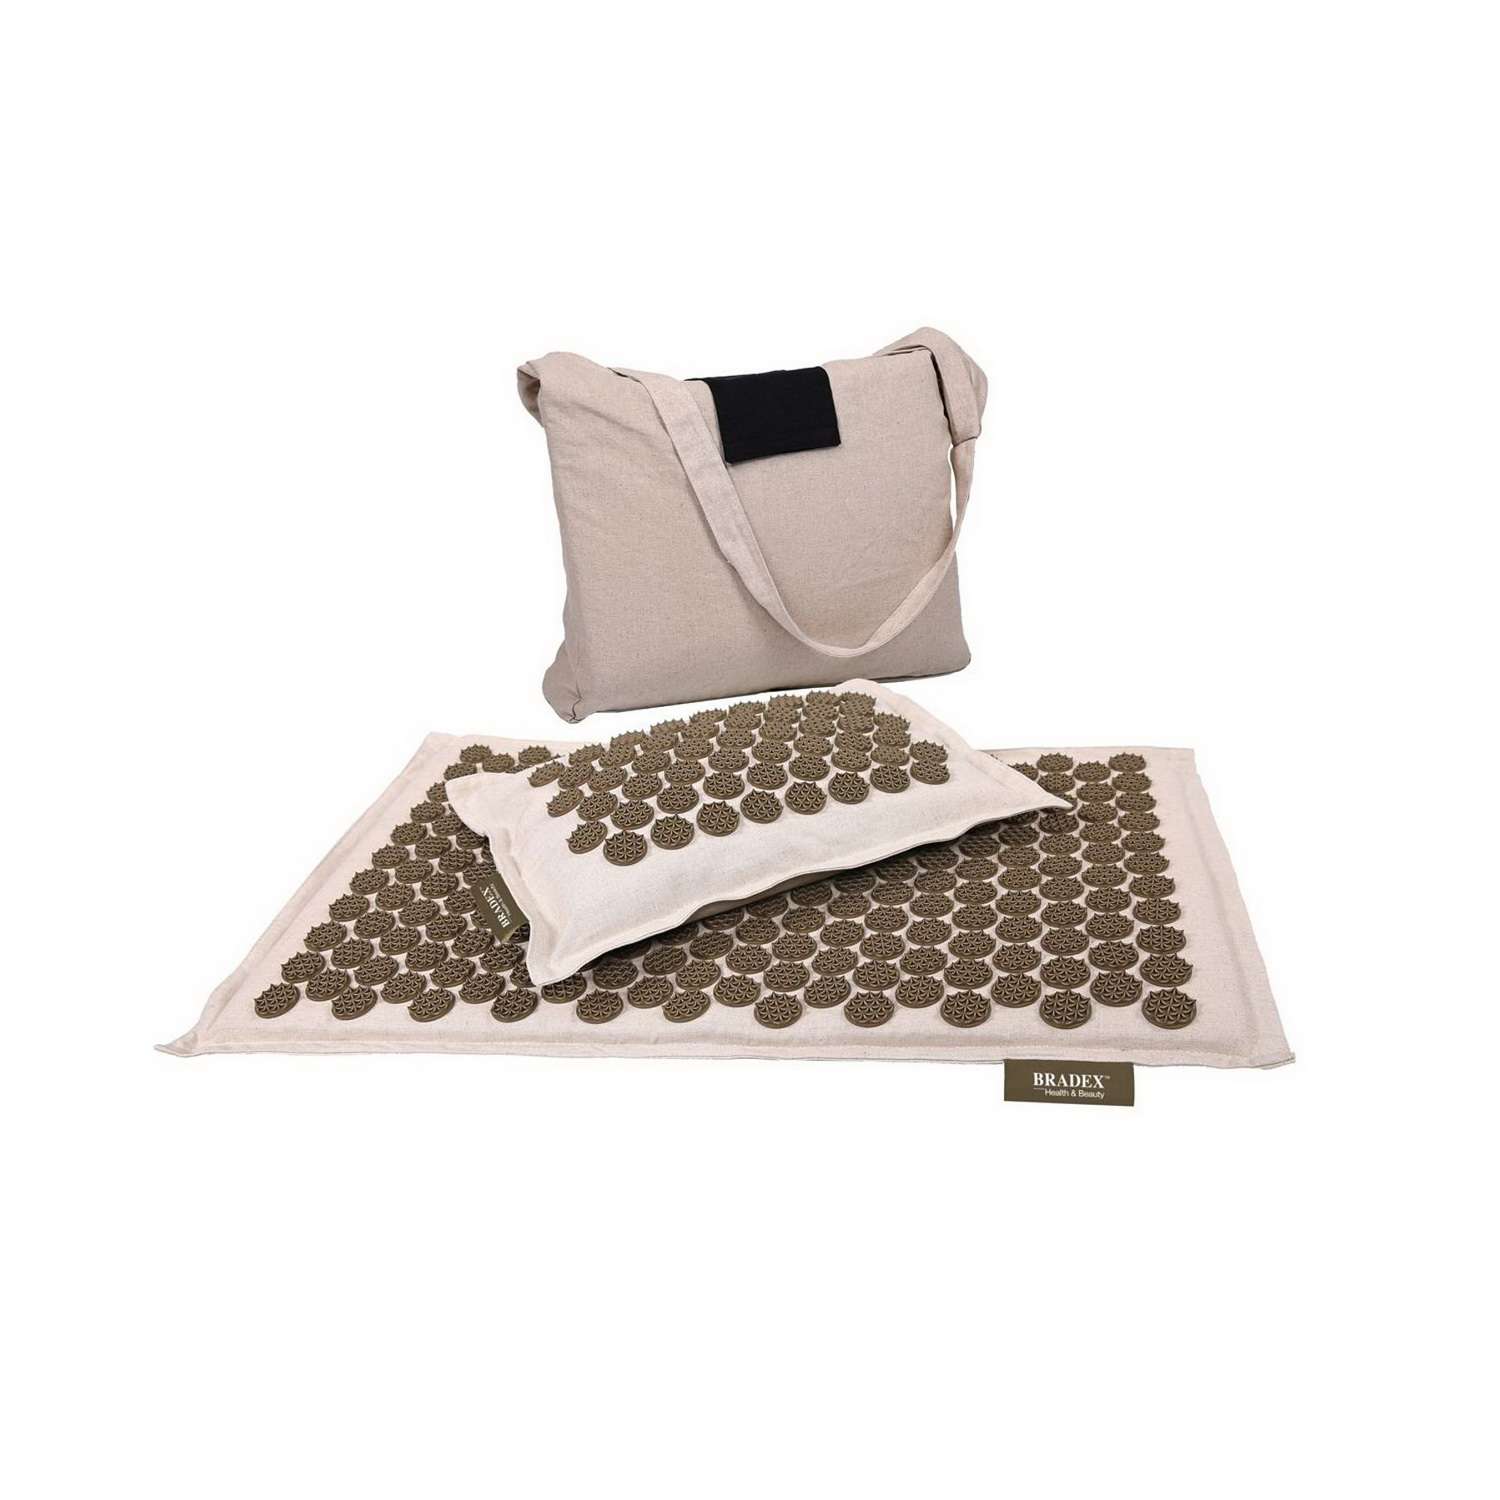 Аппликатор кузнецова набор Bradex игольчатый коврик подушка и сумка - фото 8